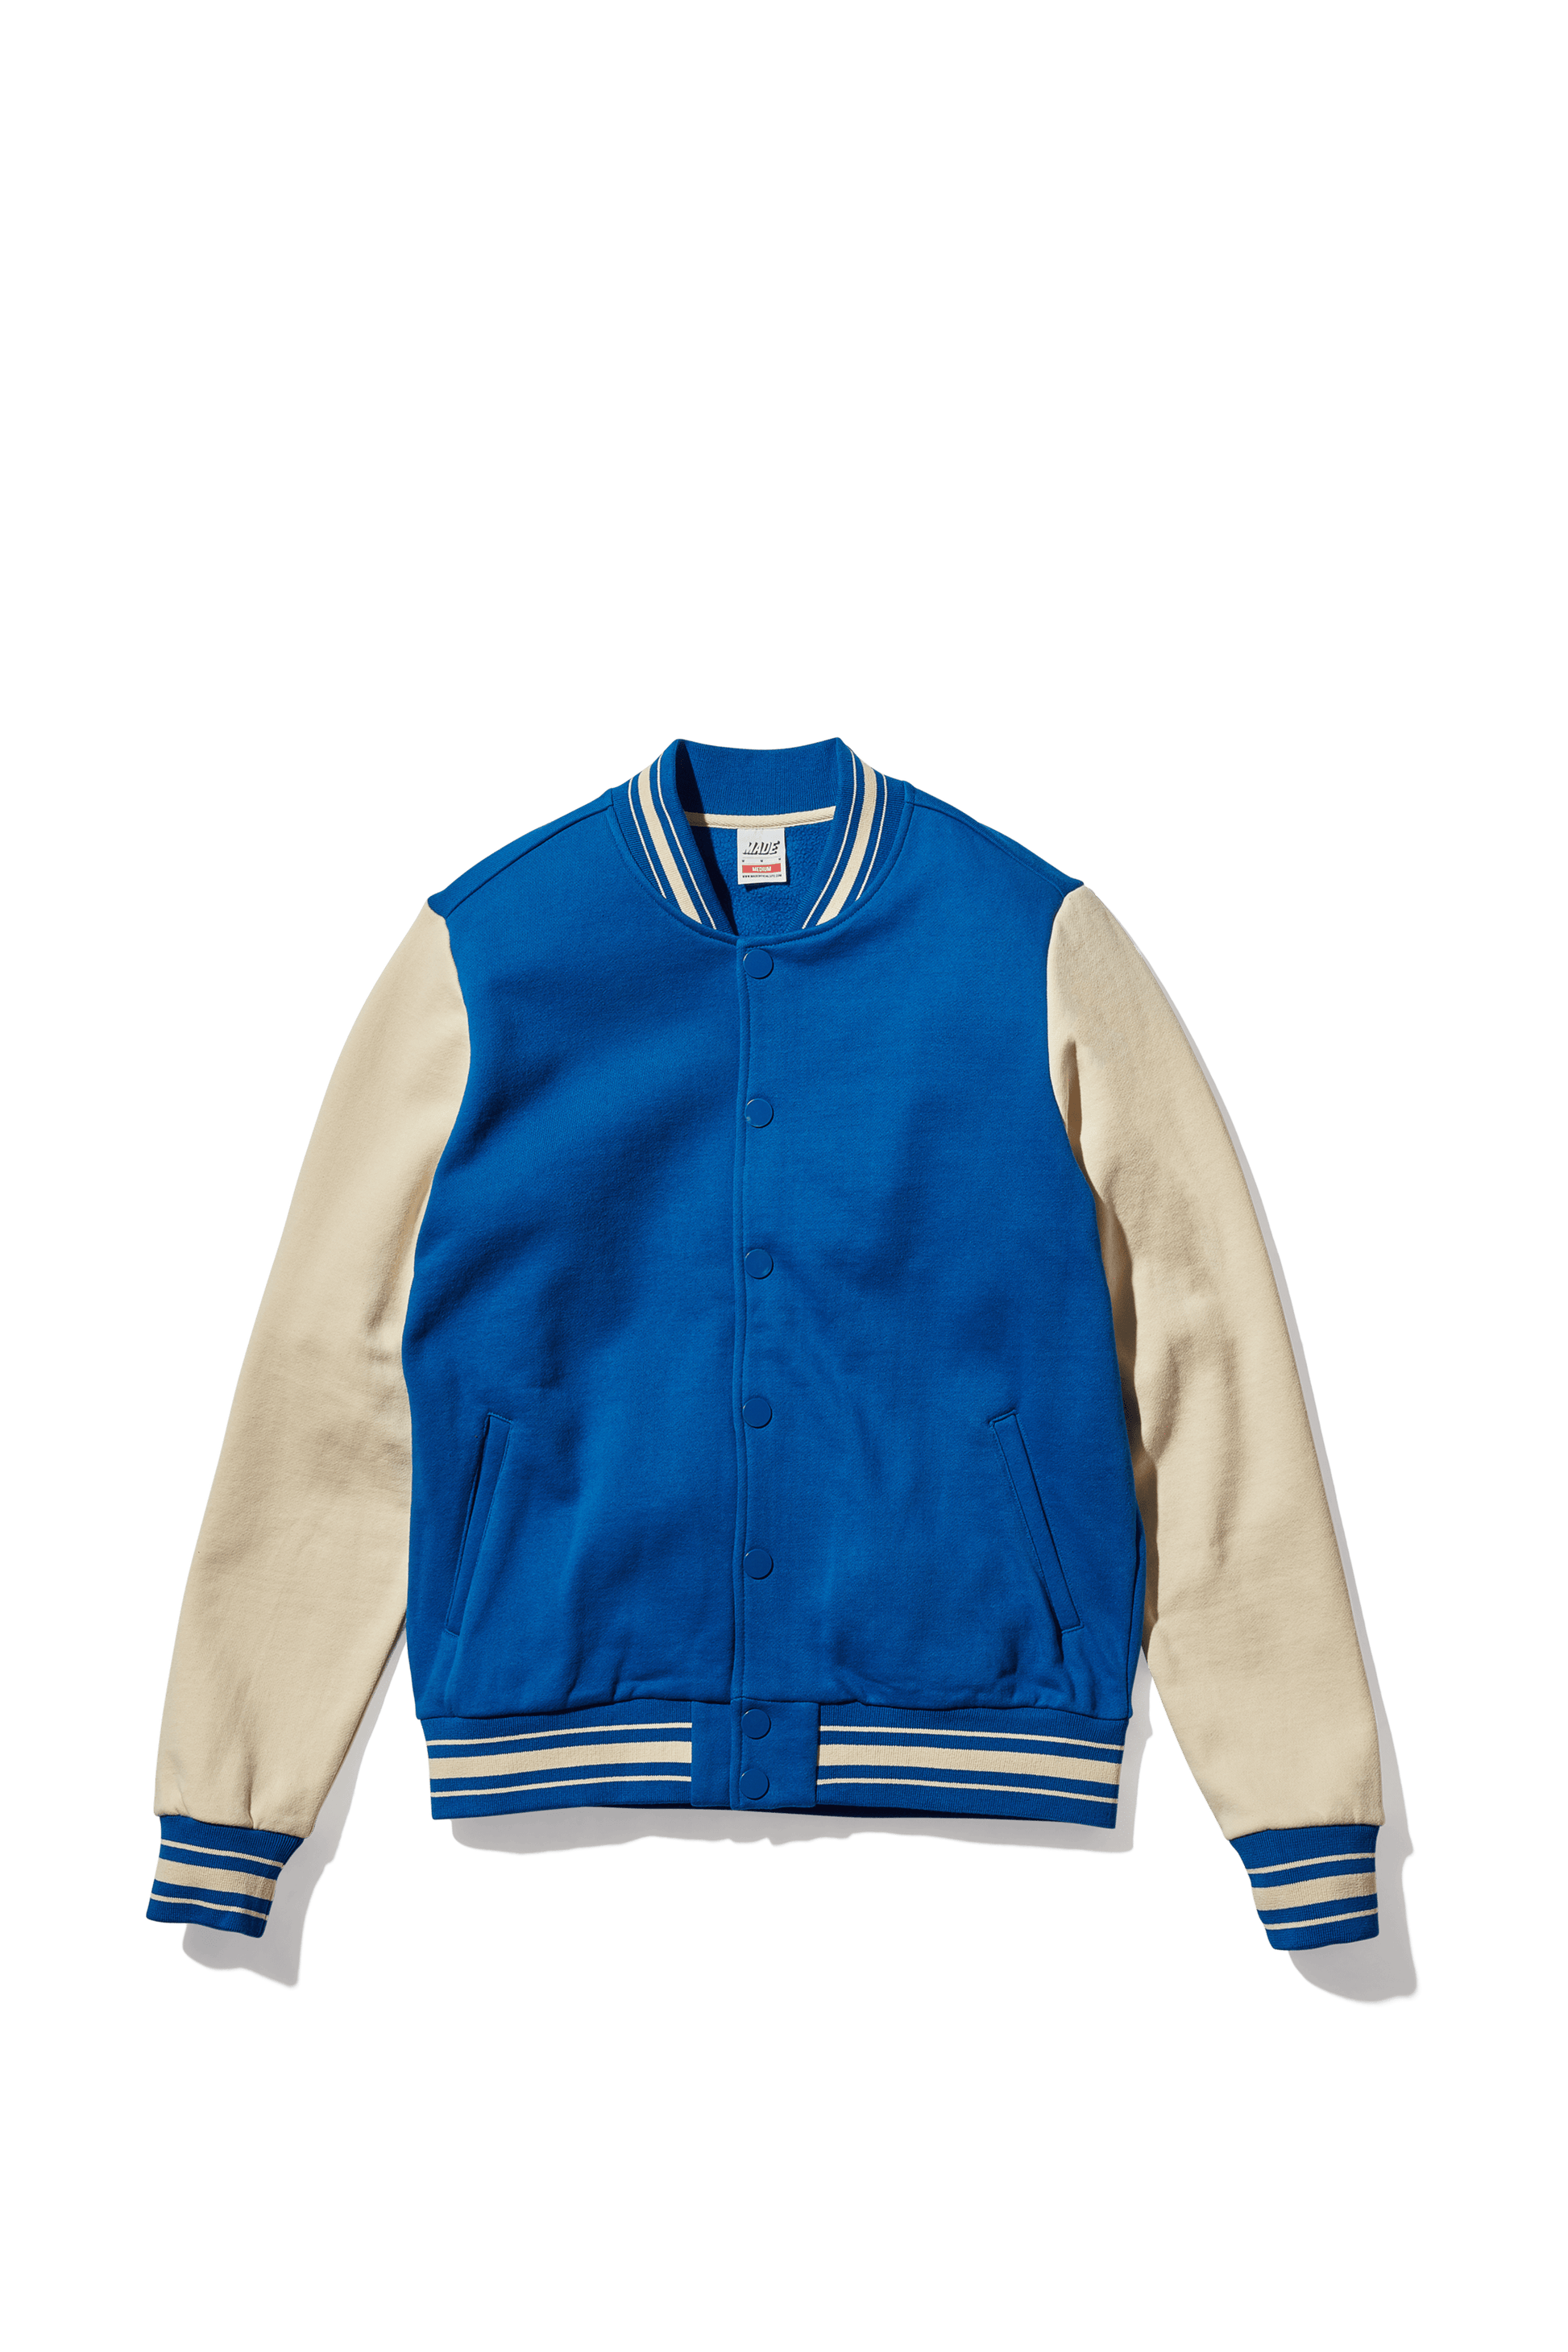 Nike SB Baseball Blue Varsity Jacket